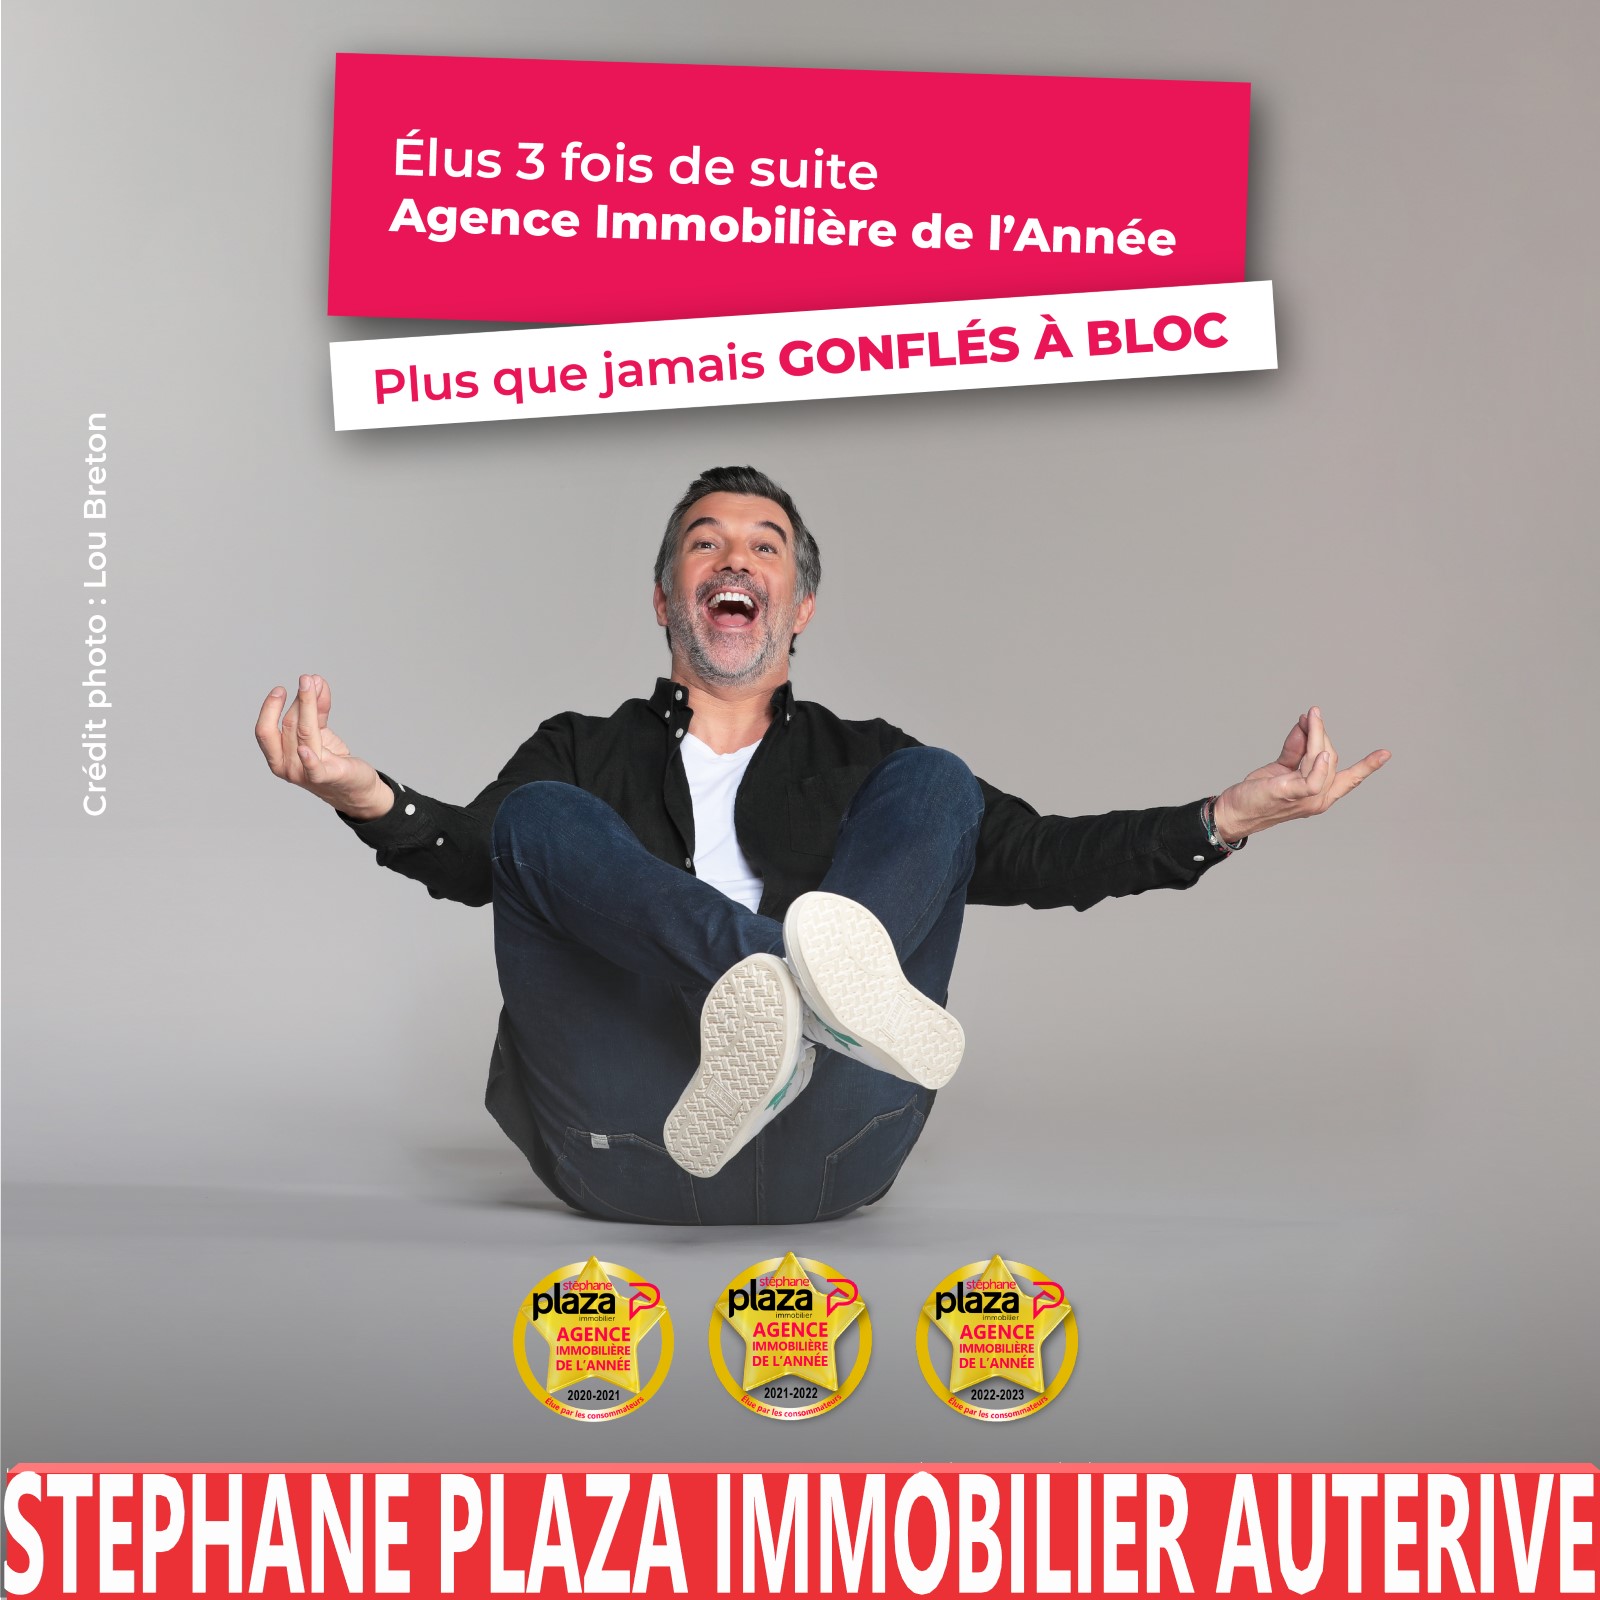 Agence immobilière à Auterive Stephane Plaza Immobilier Auterive